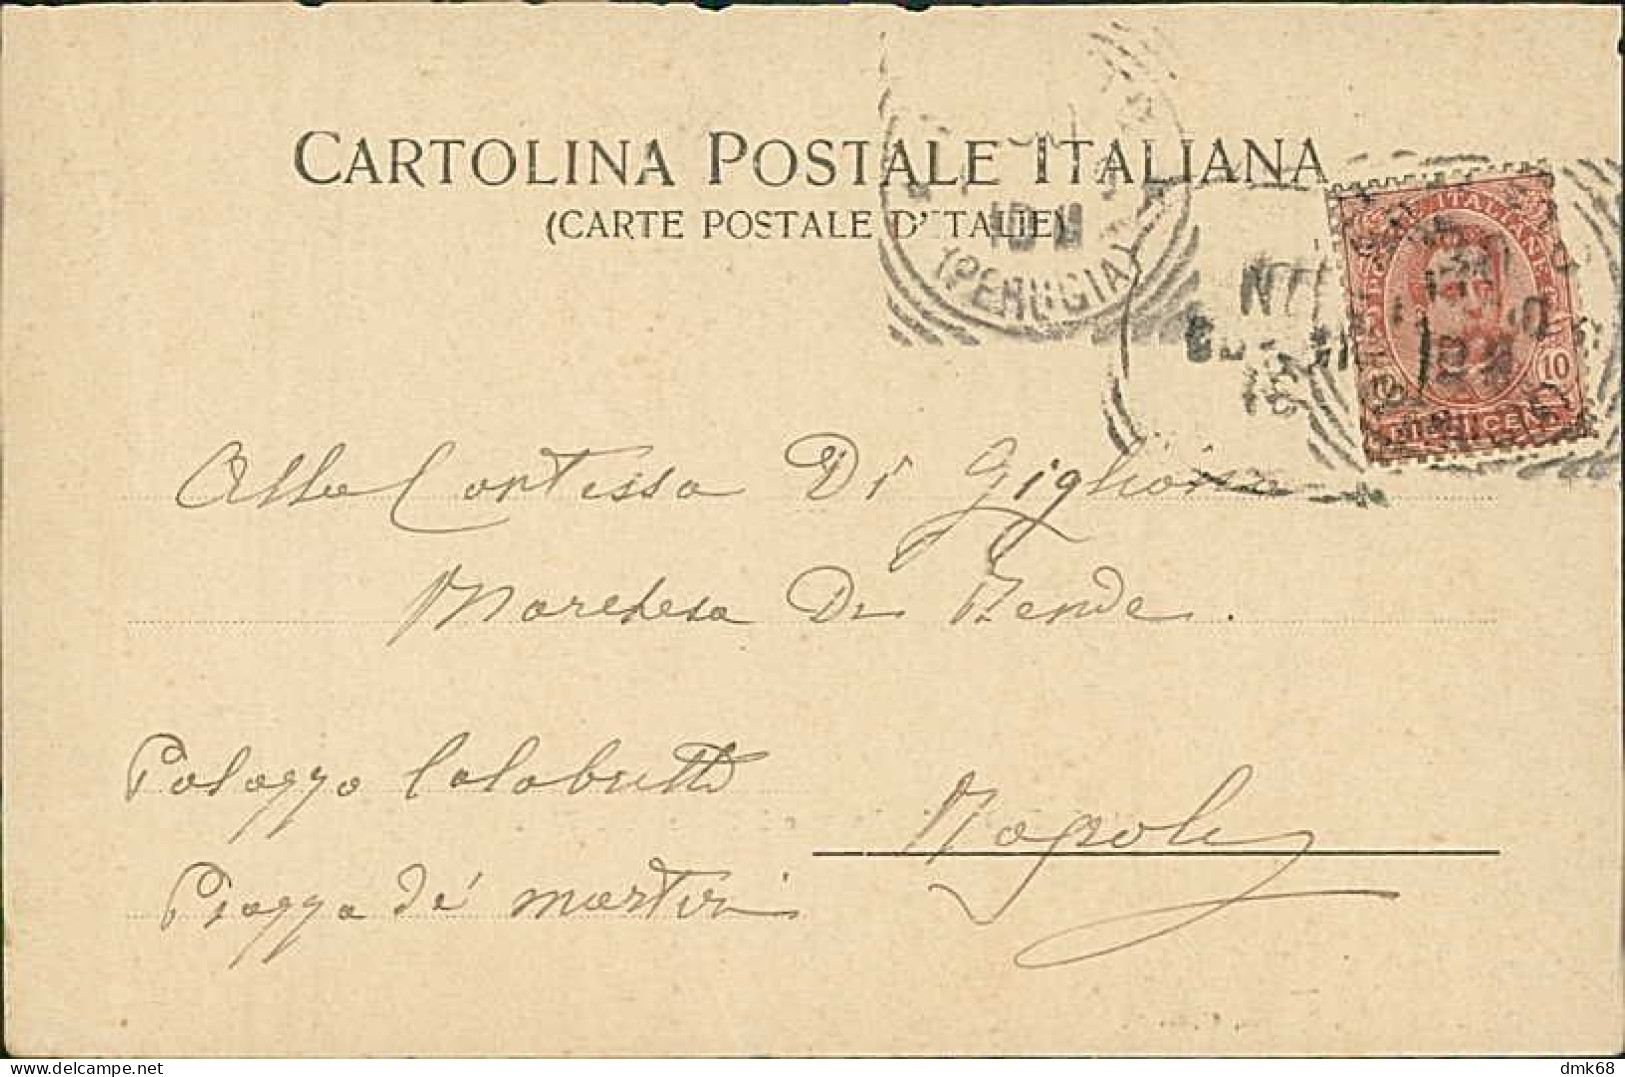 SPOLETO ( PERUGIA ) LA ROCCA E IL PONTE DELLE TORRI - EDIZIONE BENEDETTI - SPEDITA 1900 (20838) - Perugia